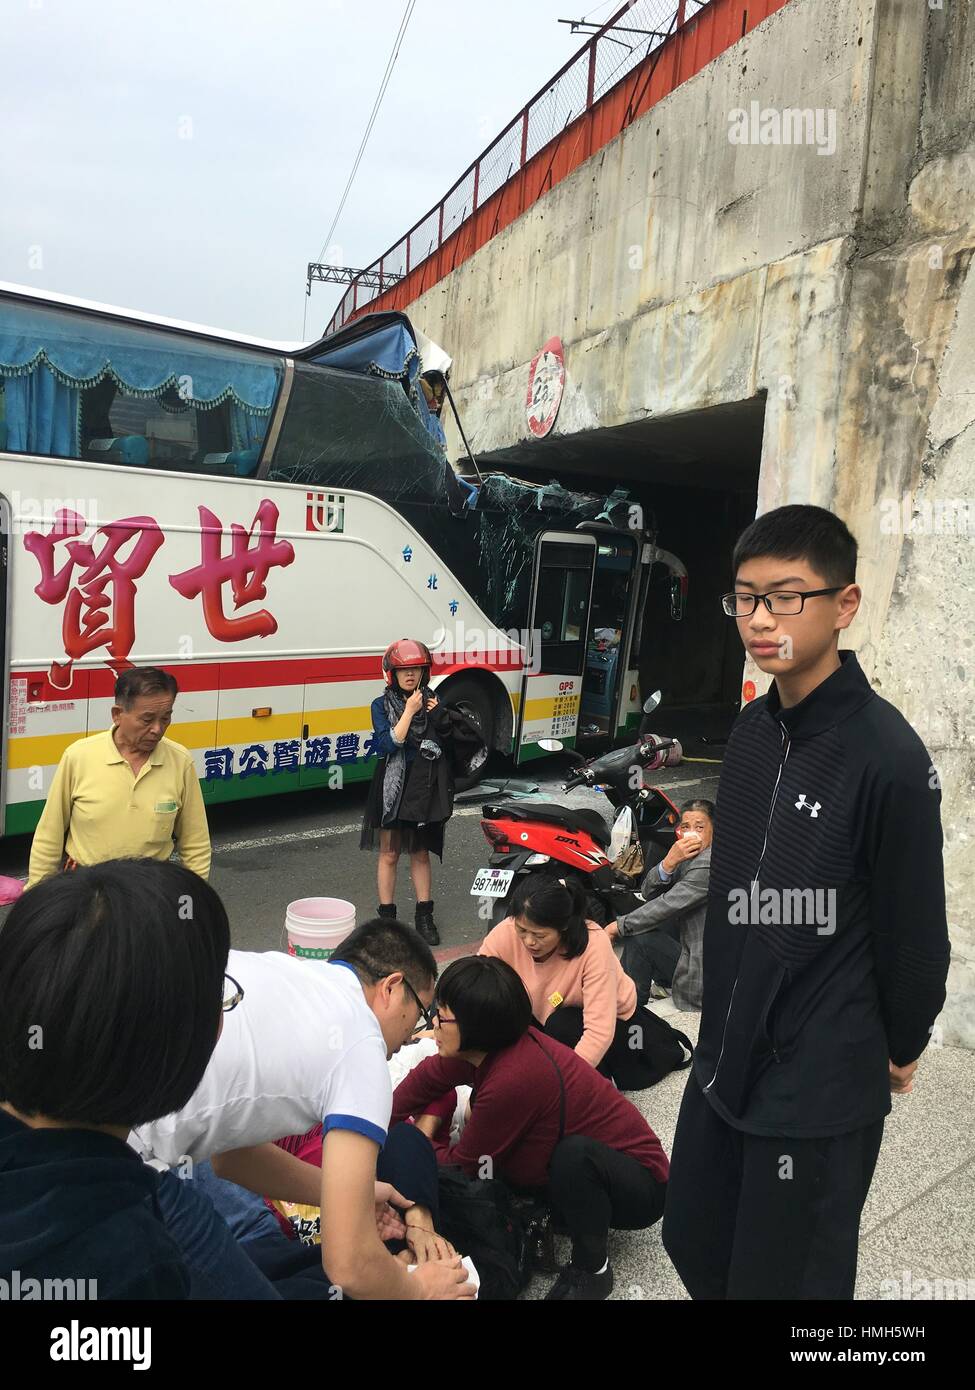 Kaohsiung, Cina. 4 febbraio, 2017. Sito incidente del bus crash in Kaohsiung, a sud-est della Cina di Taiwan. Un autobus che porta i turisti dalla terraferma cinese si è schiantato in Kaohsiung sabato, con un numero di feriti. Credito: Xinhua/Alamy Live News Foto Stock